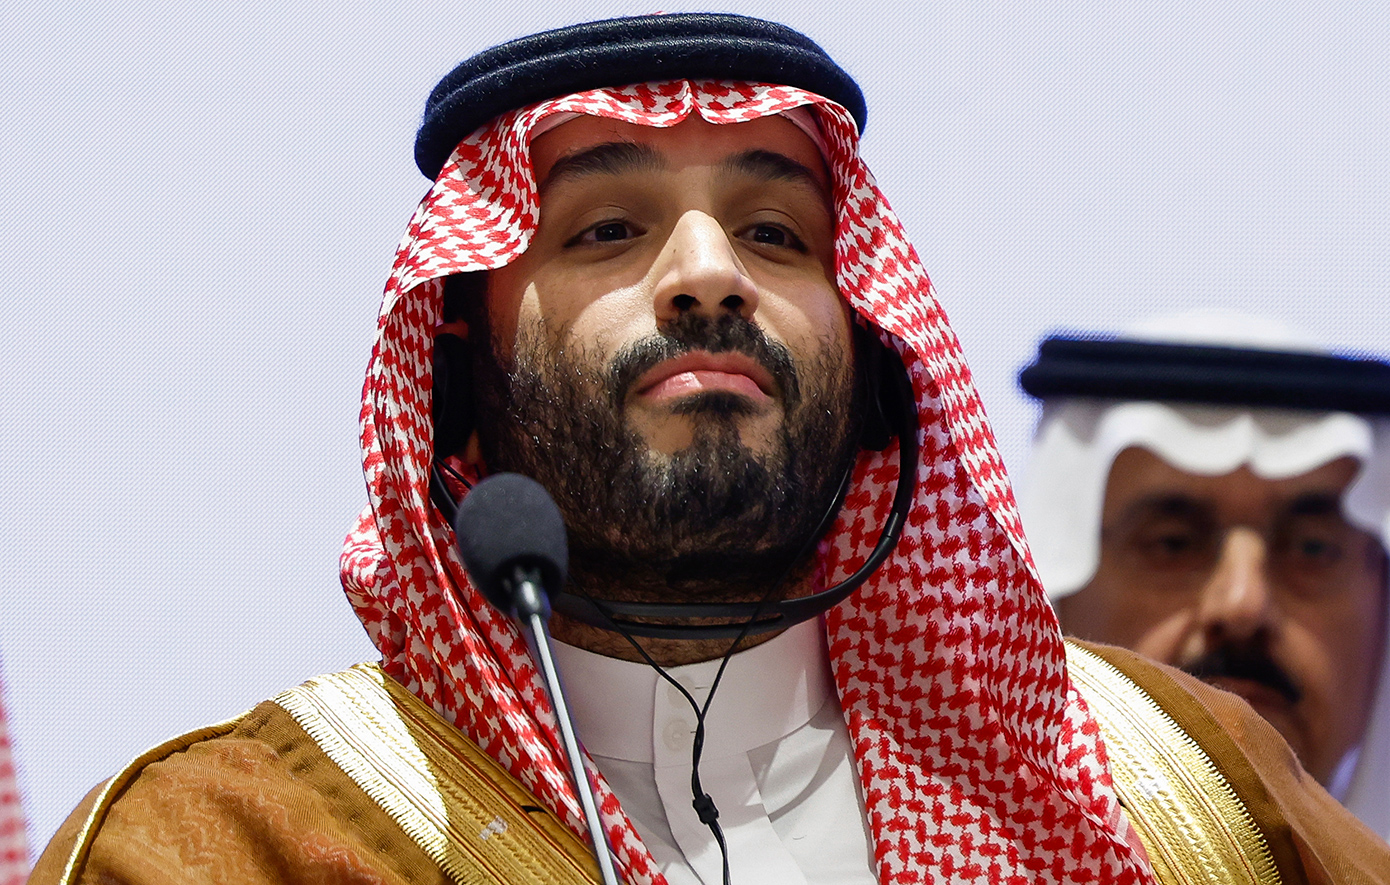 Αναβλήθηκε η επίσκεψη του πρίγκιπα διαδόχου της Σαουδικής Αραβίας στην Ιαπωνία λόγω της επιδείνωση της υγείας του βασιλιά Σαλμάν